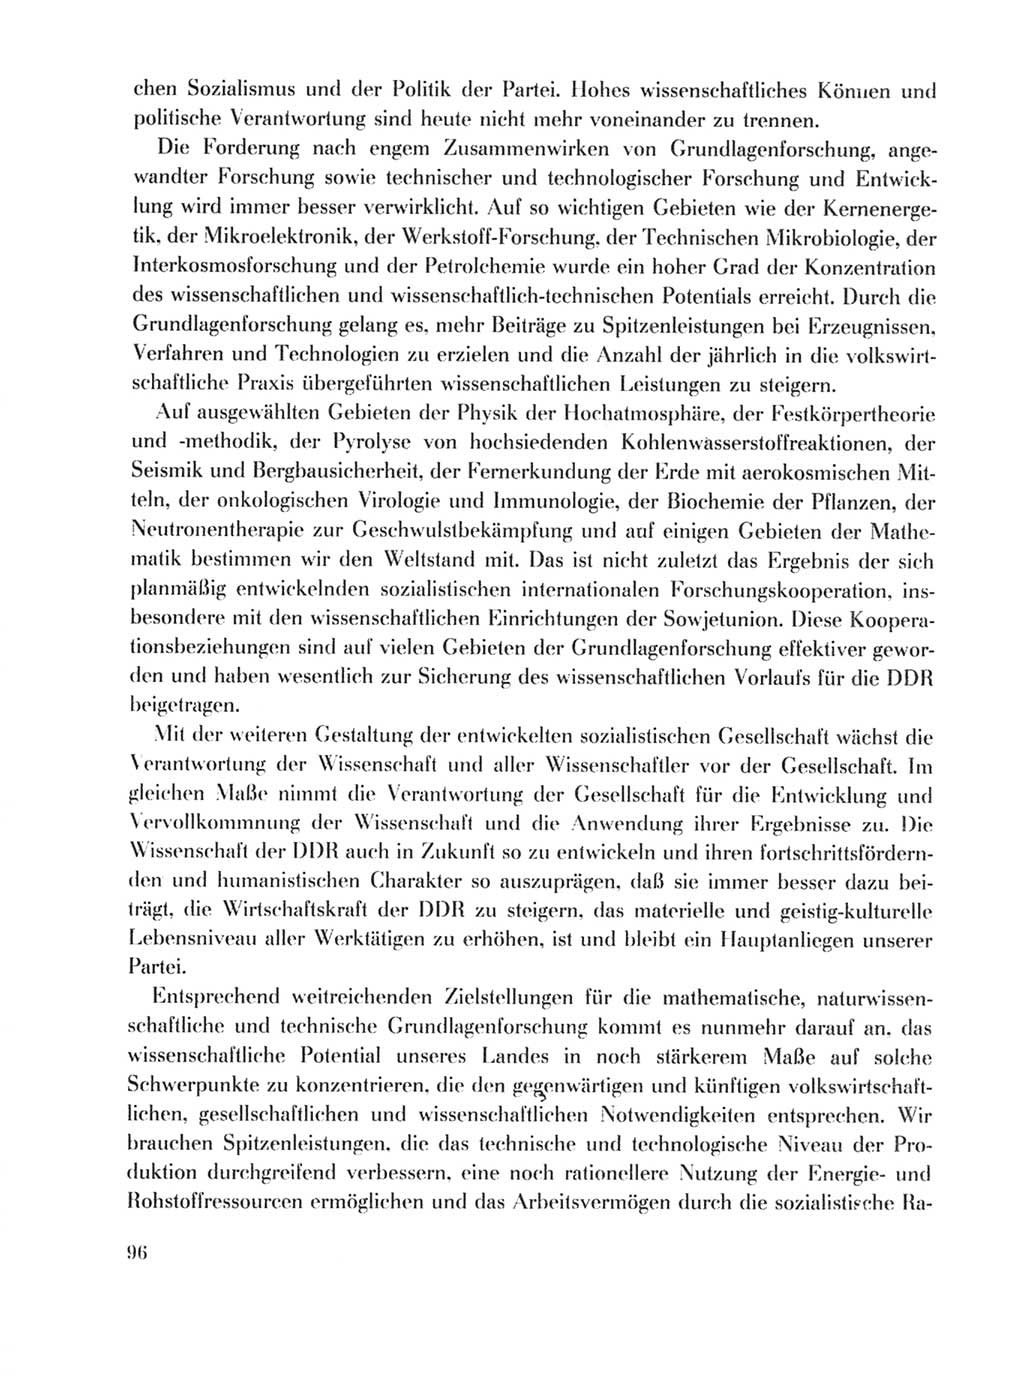 Protokoll der Verhandlungen des Ⅹ. Parteitages der Sozialistischen Einheitspartei Deutschlands (SED) [Deutsche Demokratische Republik (DDR)] 1981, Band 1, Seite 96 (Prot. Verh. Ⅹ. PT SED DDR 1981, Bd. 1, S. 96)